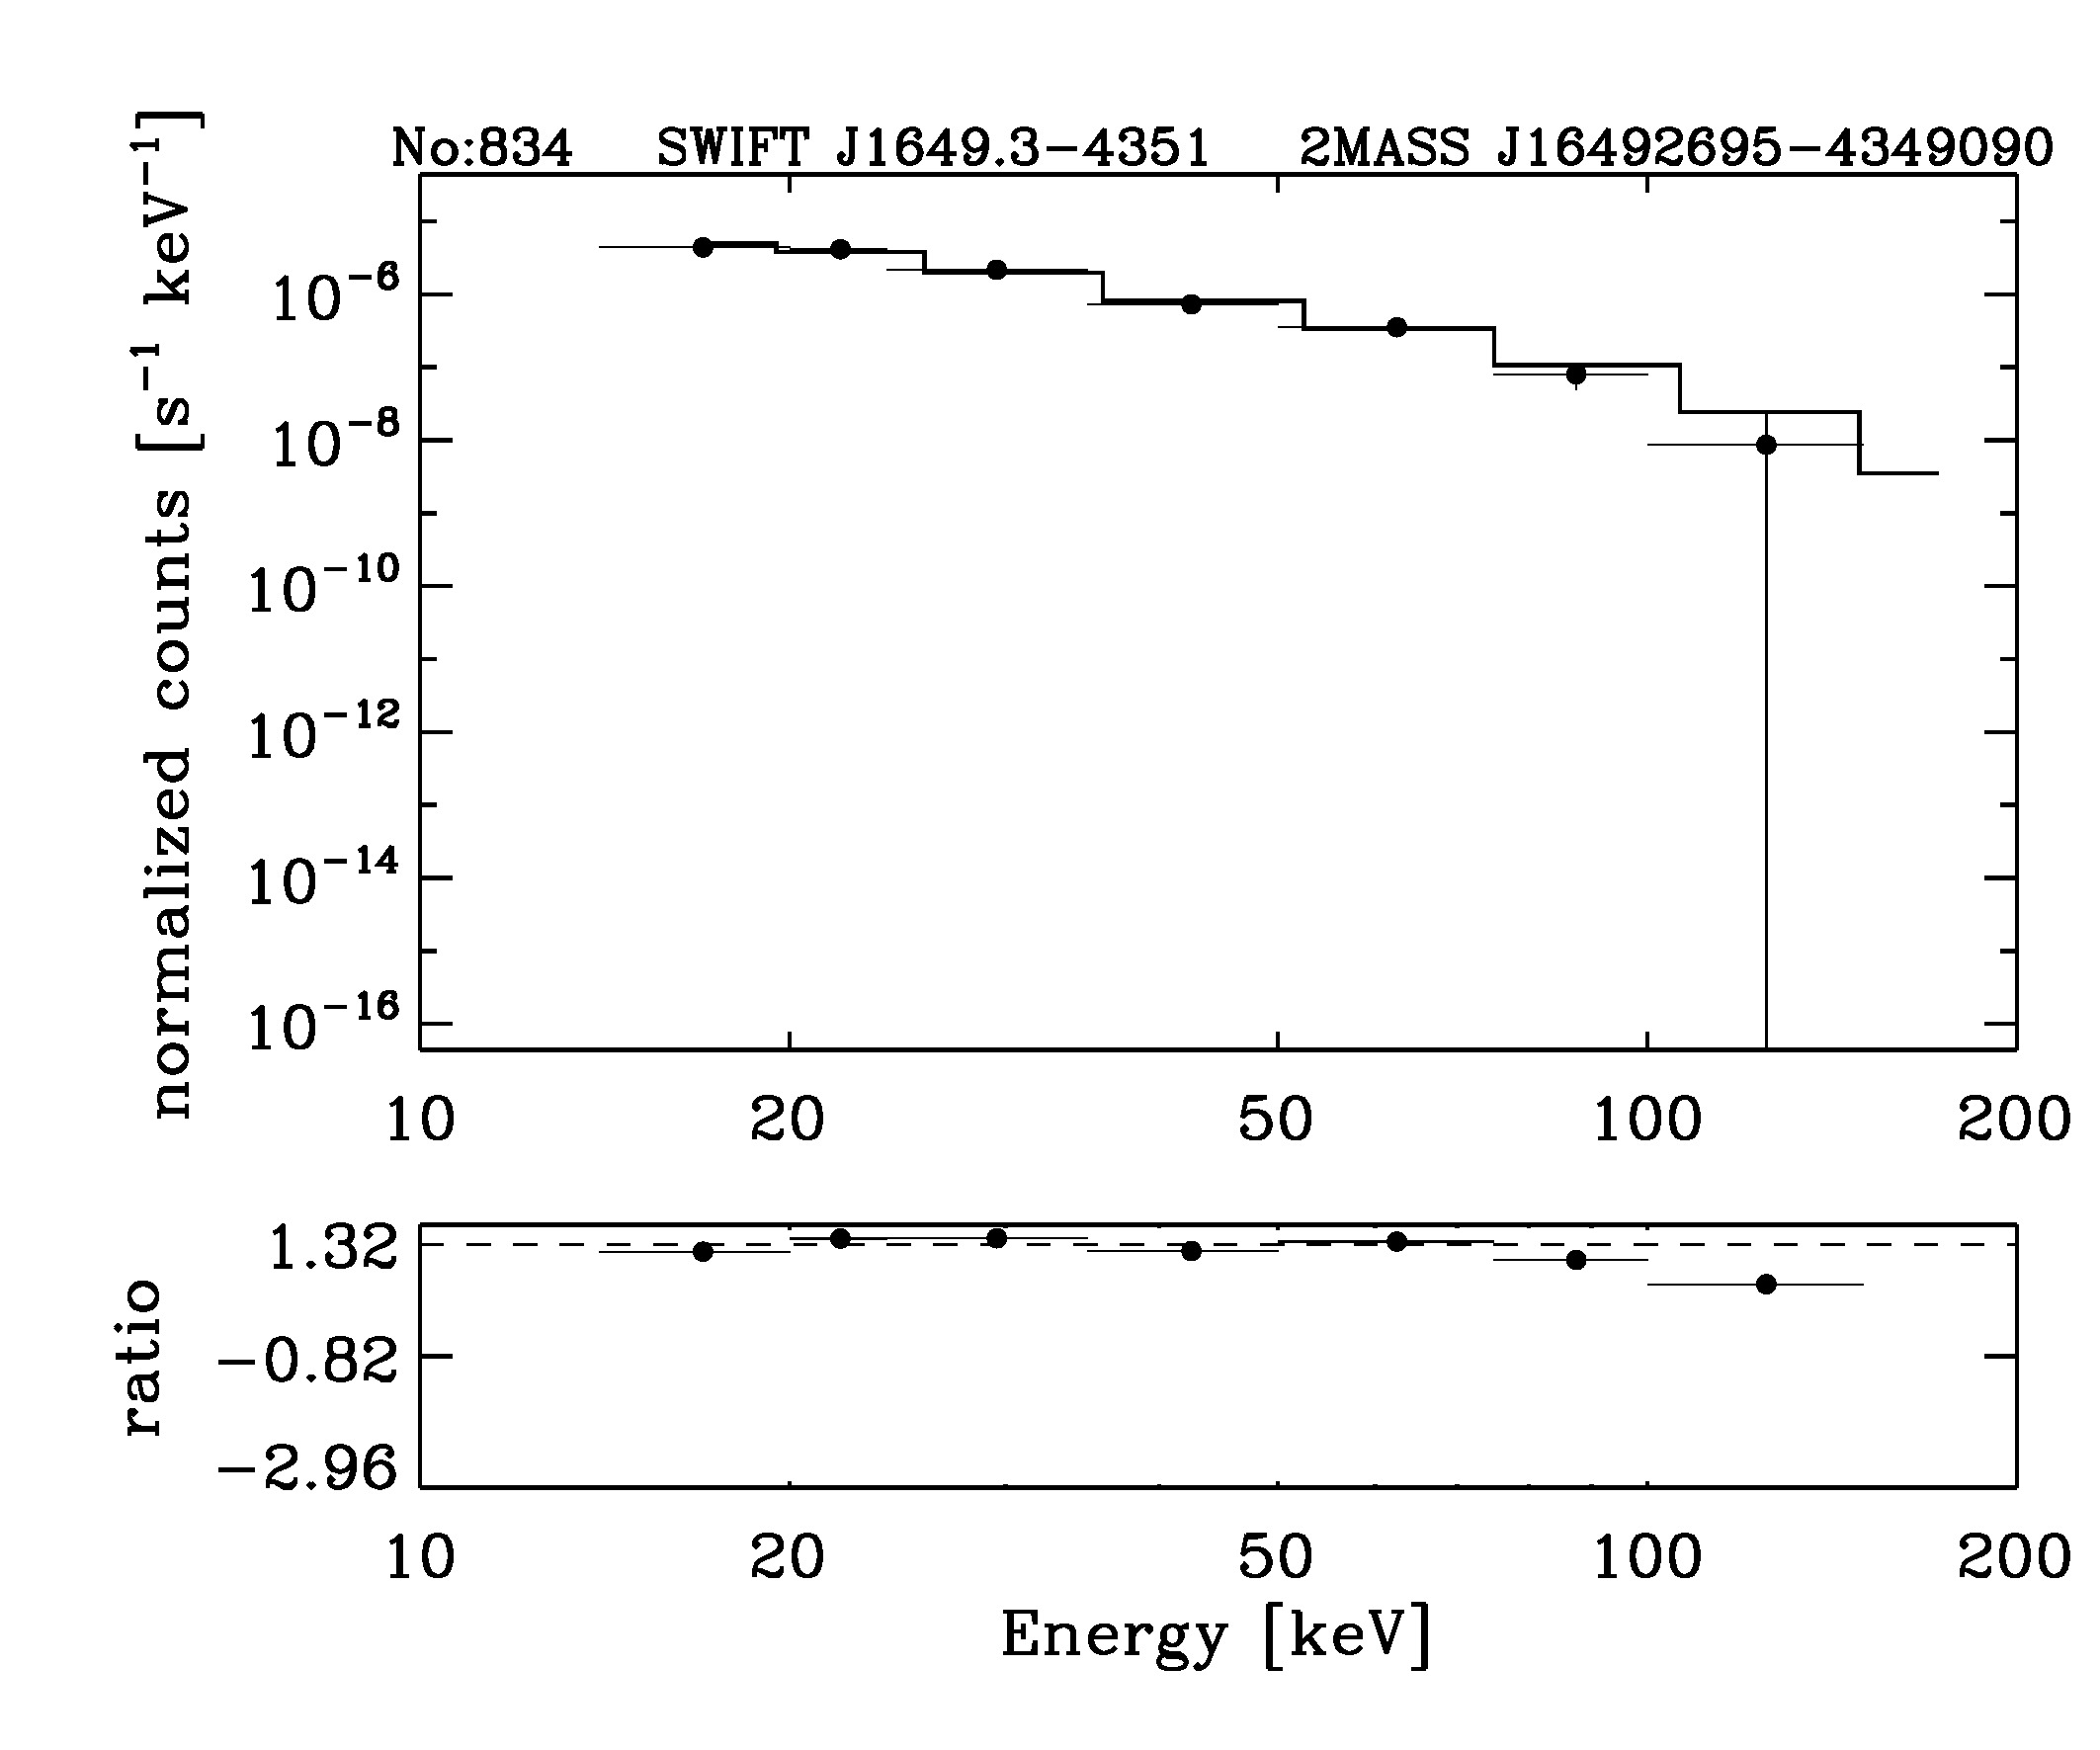 BAT Spectrum for SWIFT J1649.3-4351